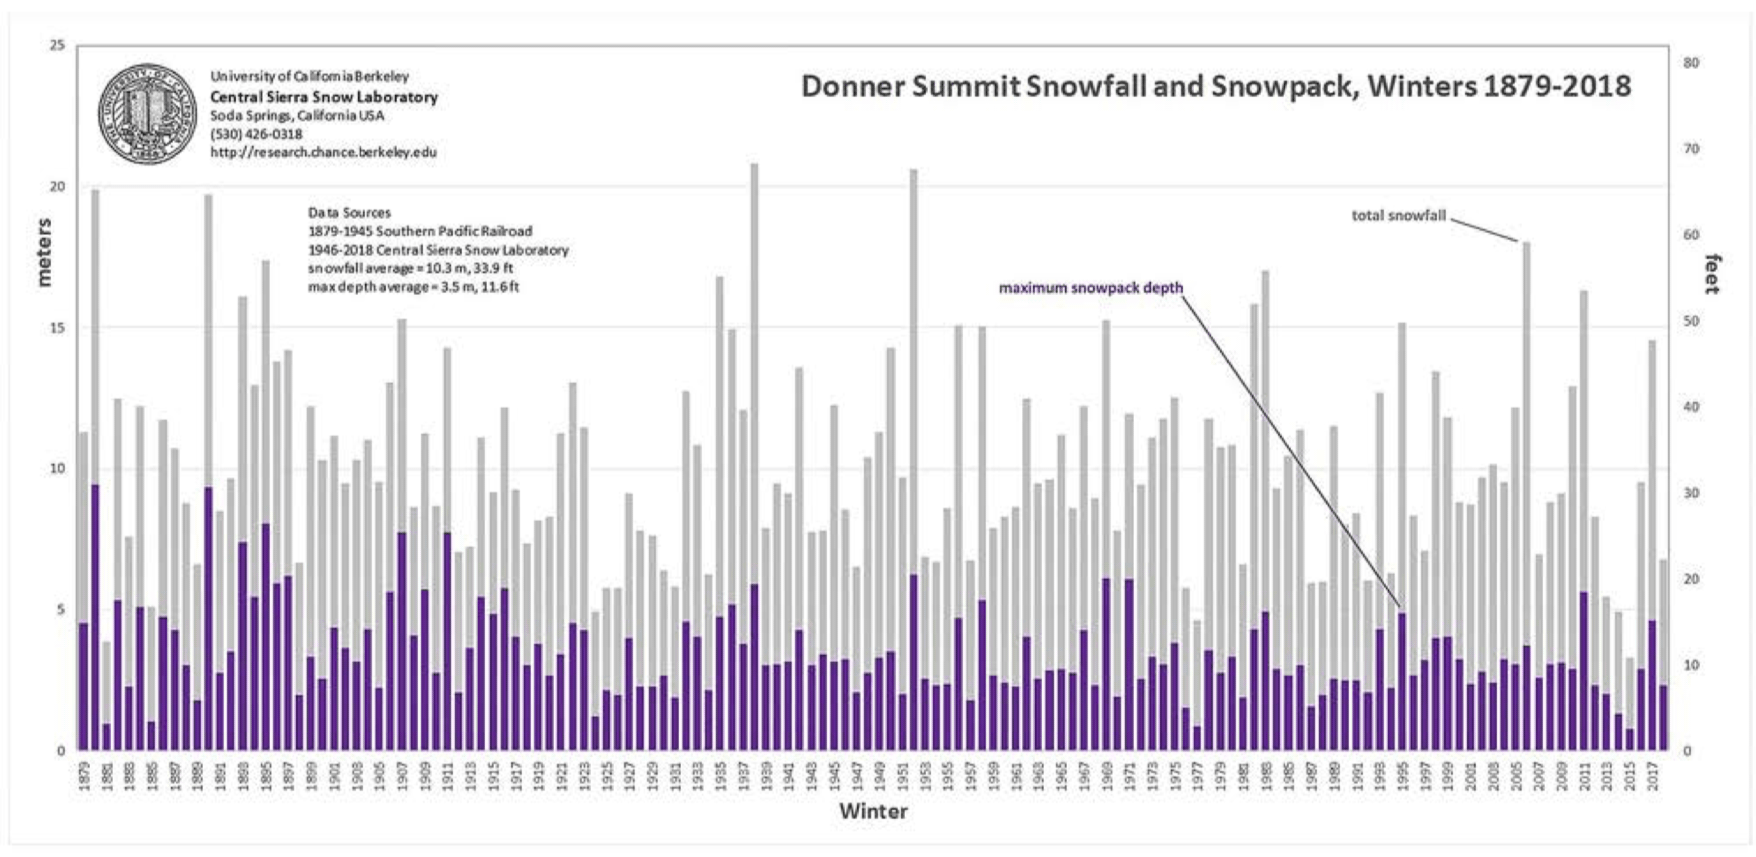 Sierra Nevada snow records